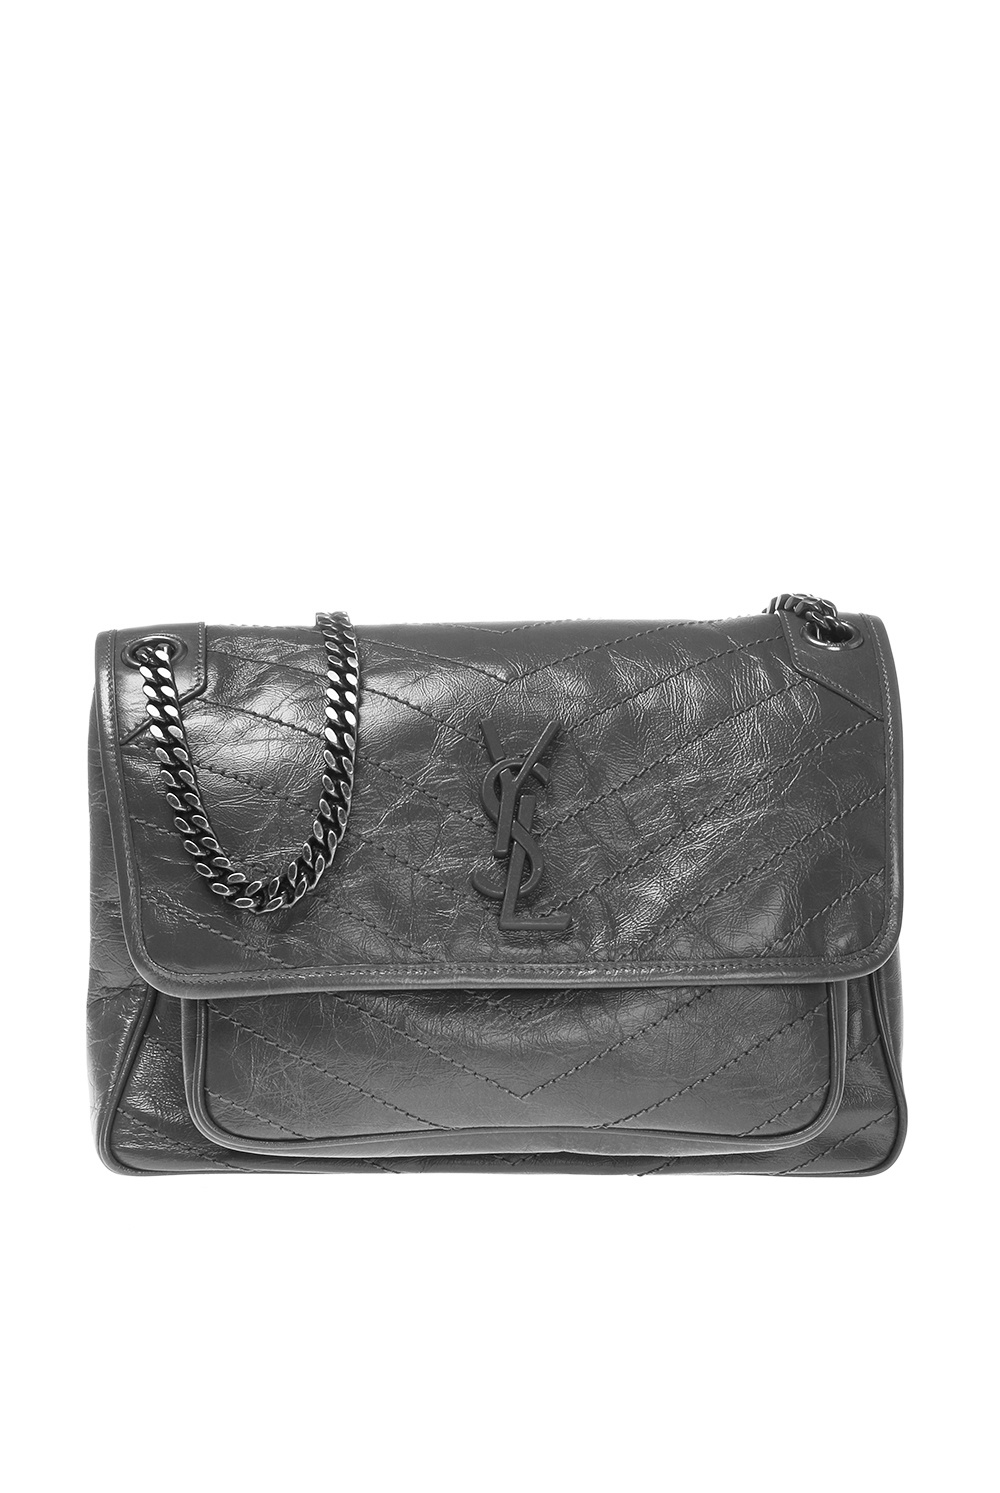 Yves Saint Laurent YSL Gray Leather Saint Tropez Shoulder Bag Grey